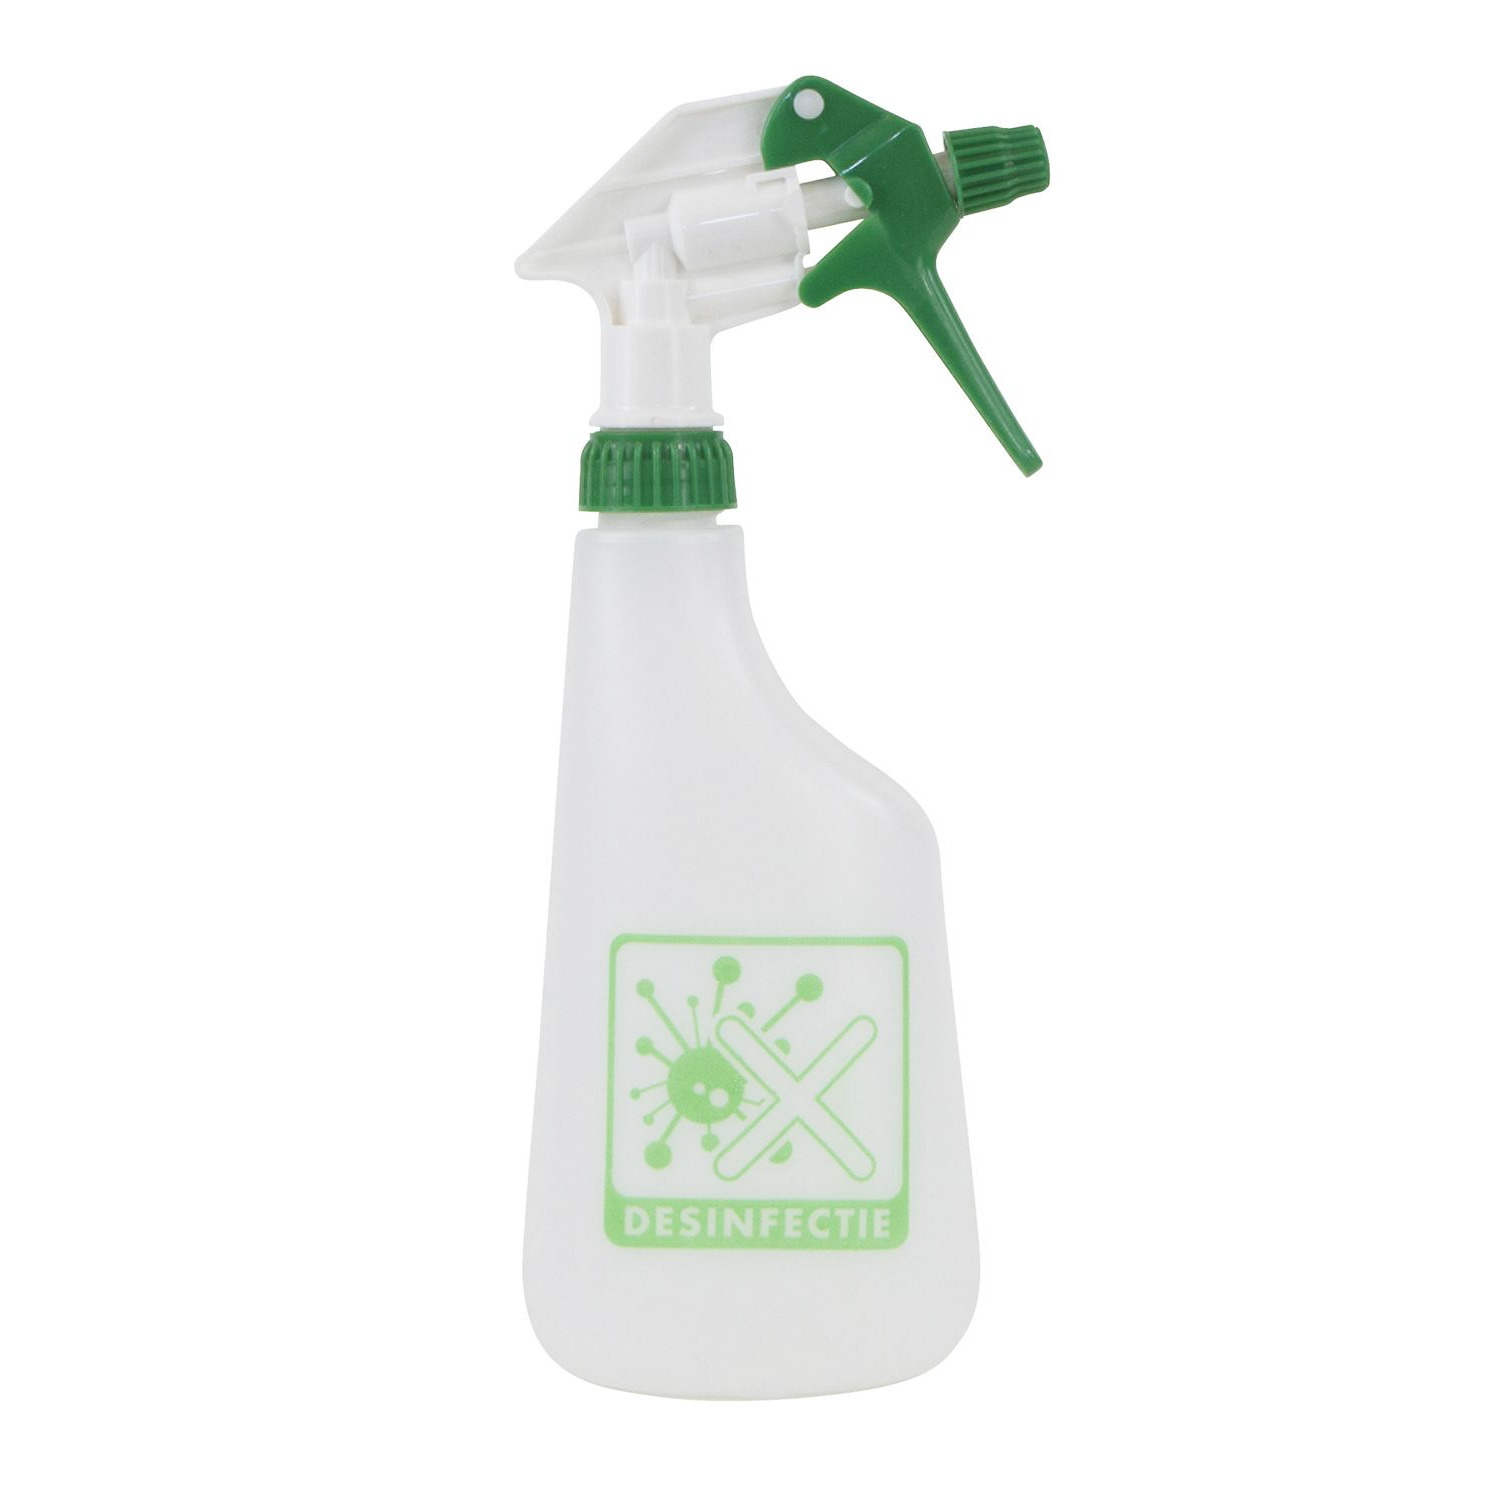 1x Plantenspuiten-waterspuiten 0,6 liter desinfectie spray